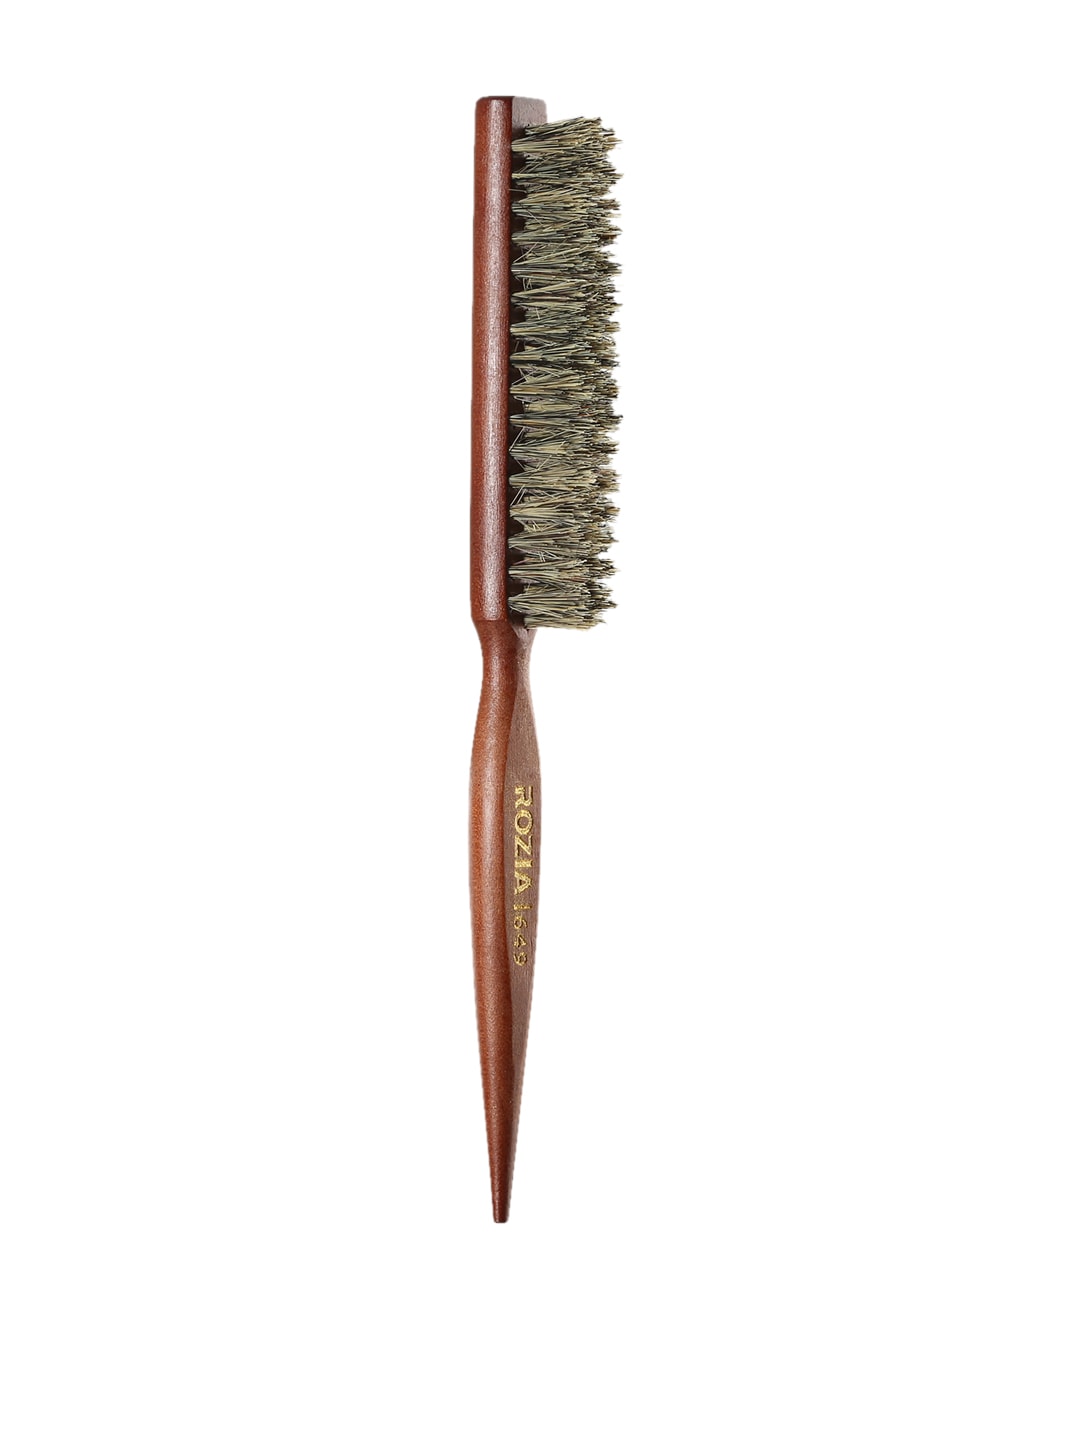 Rozia Unisex Brown Pro Teasing Comb & Straightener Brush Price in India